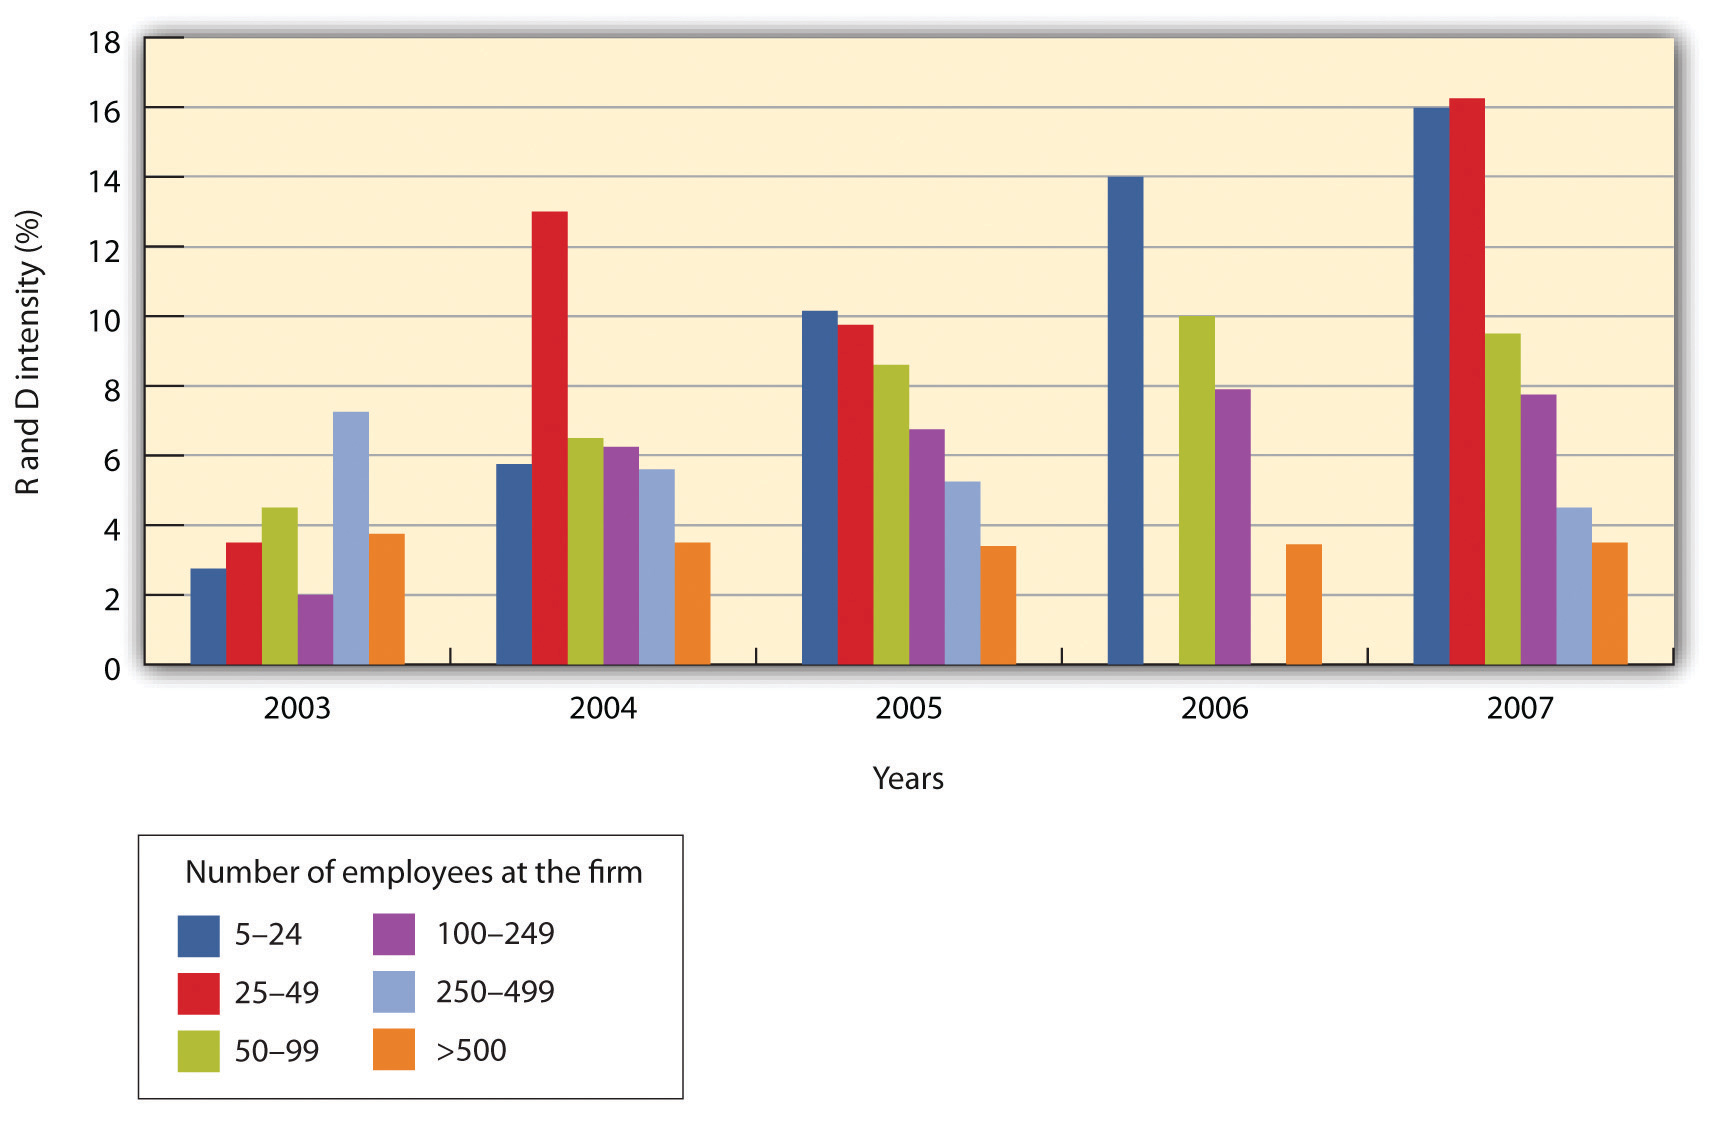 La intensidad de I+D creció fuertemente para pequeñas empresas entre 2003 y 2008